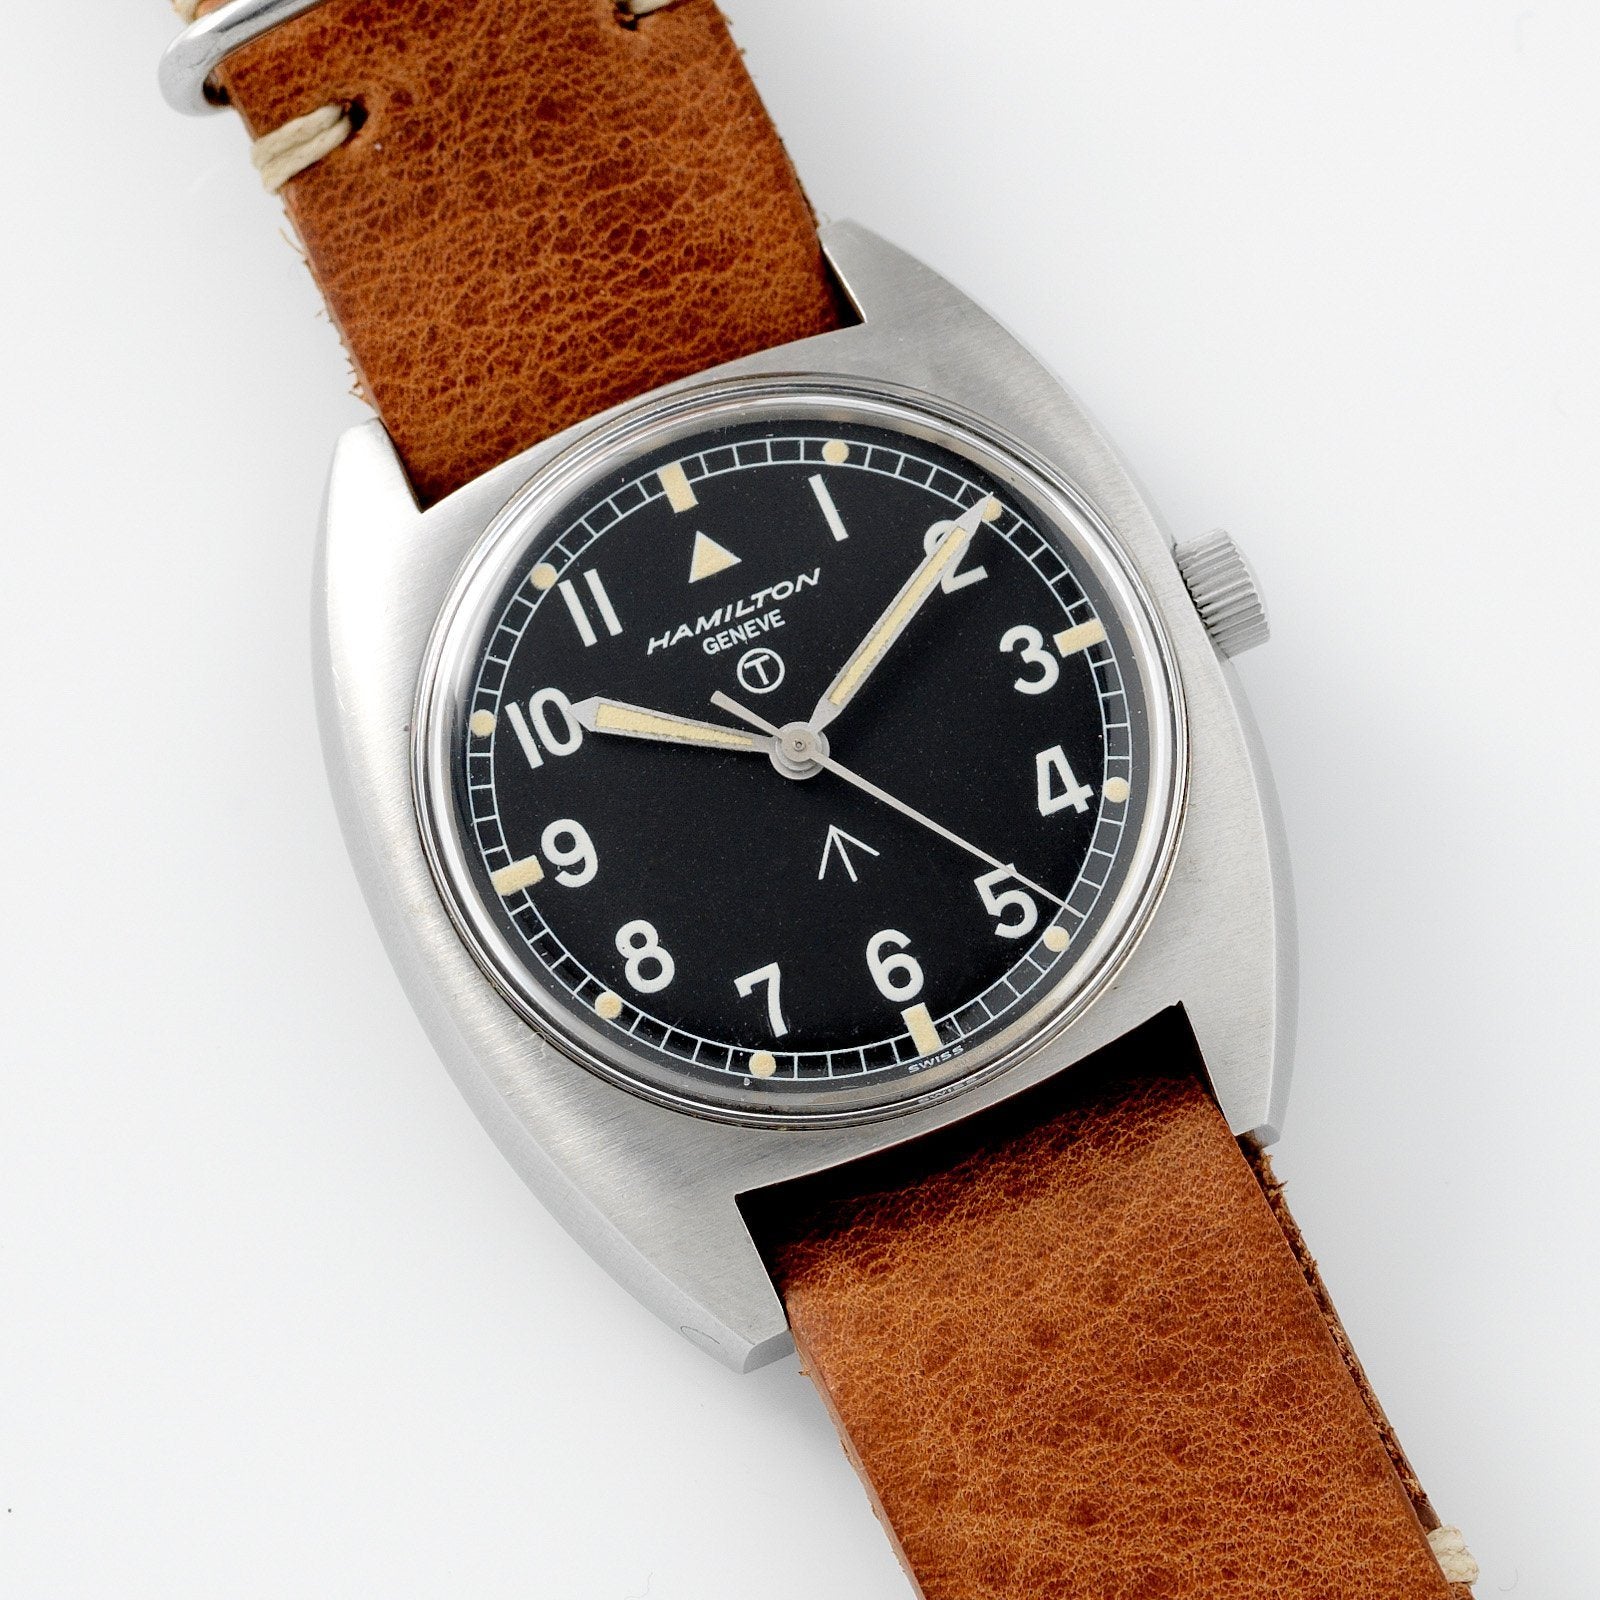 Hamilton W10 RAF British Army Issued Watch